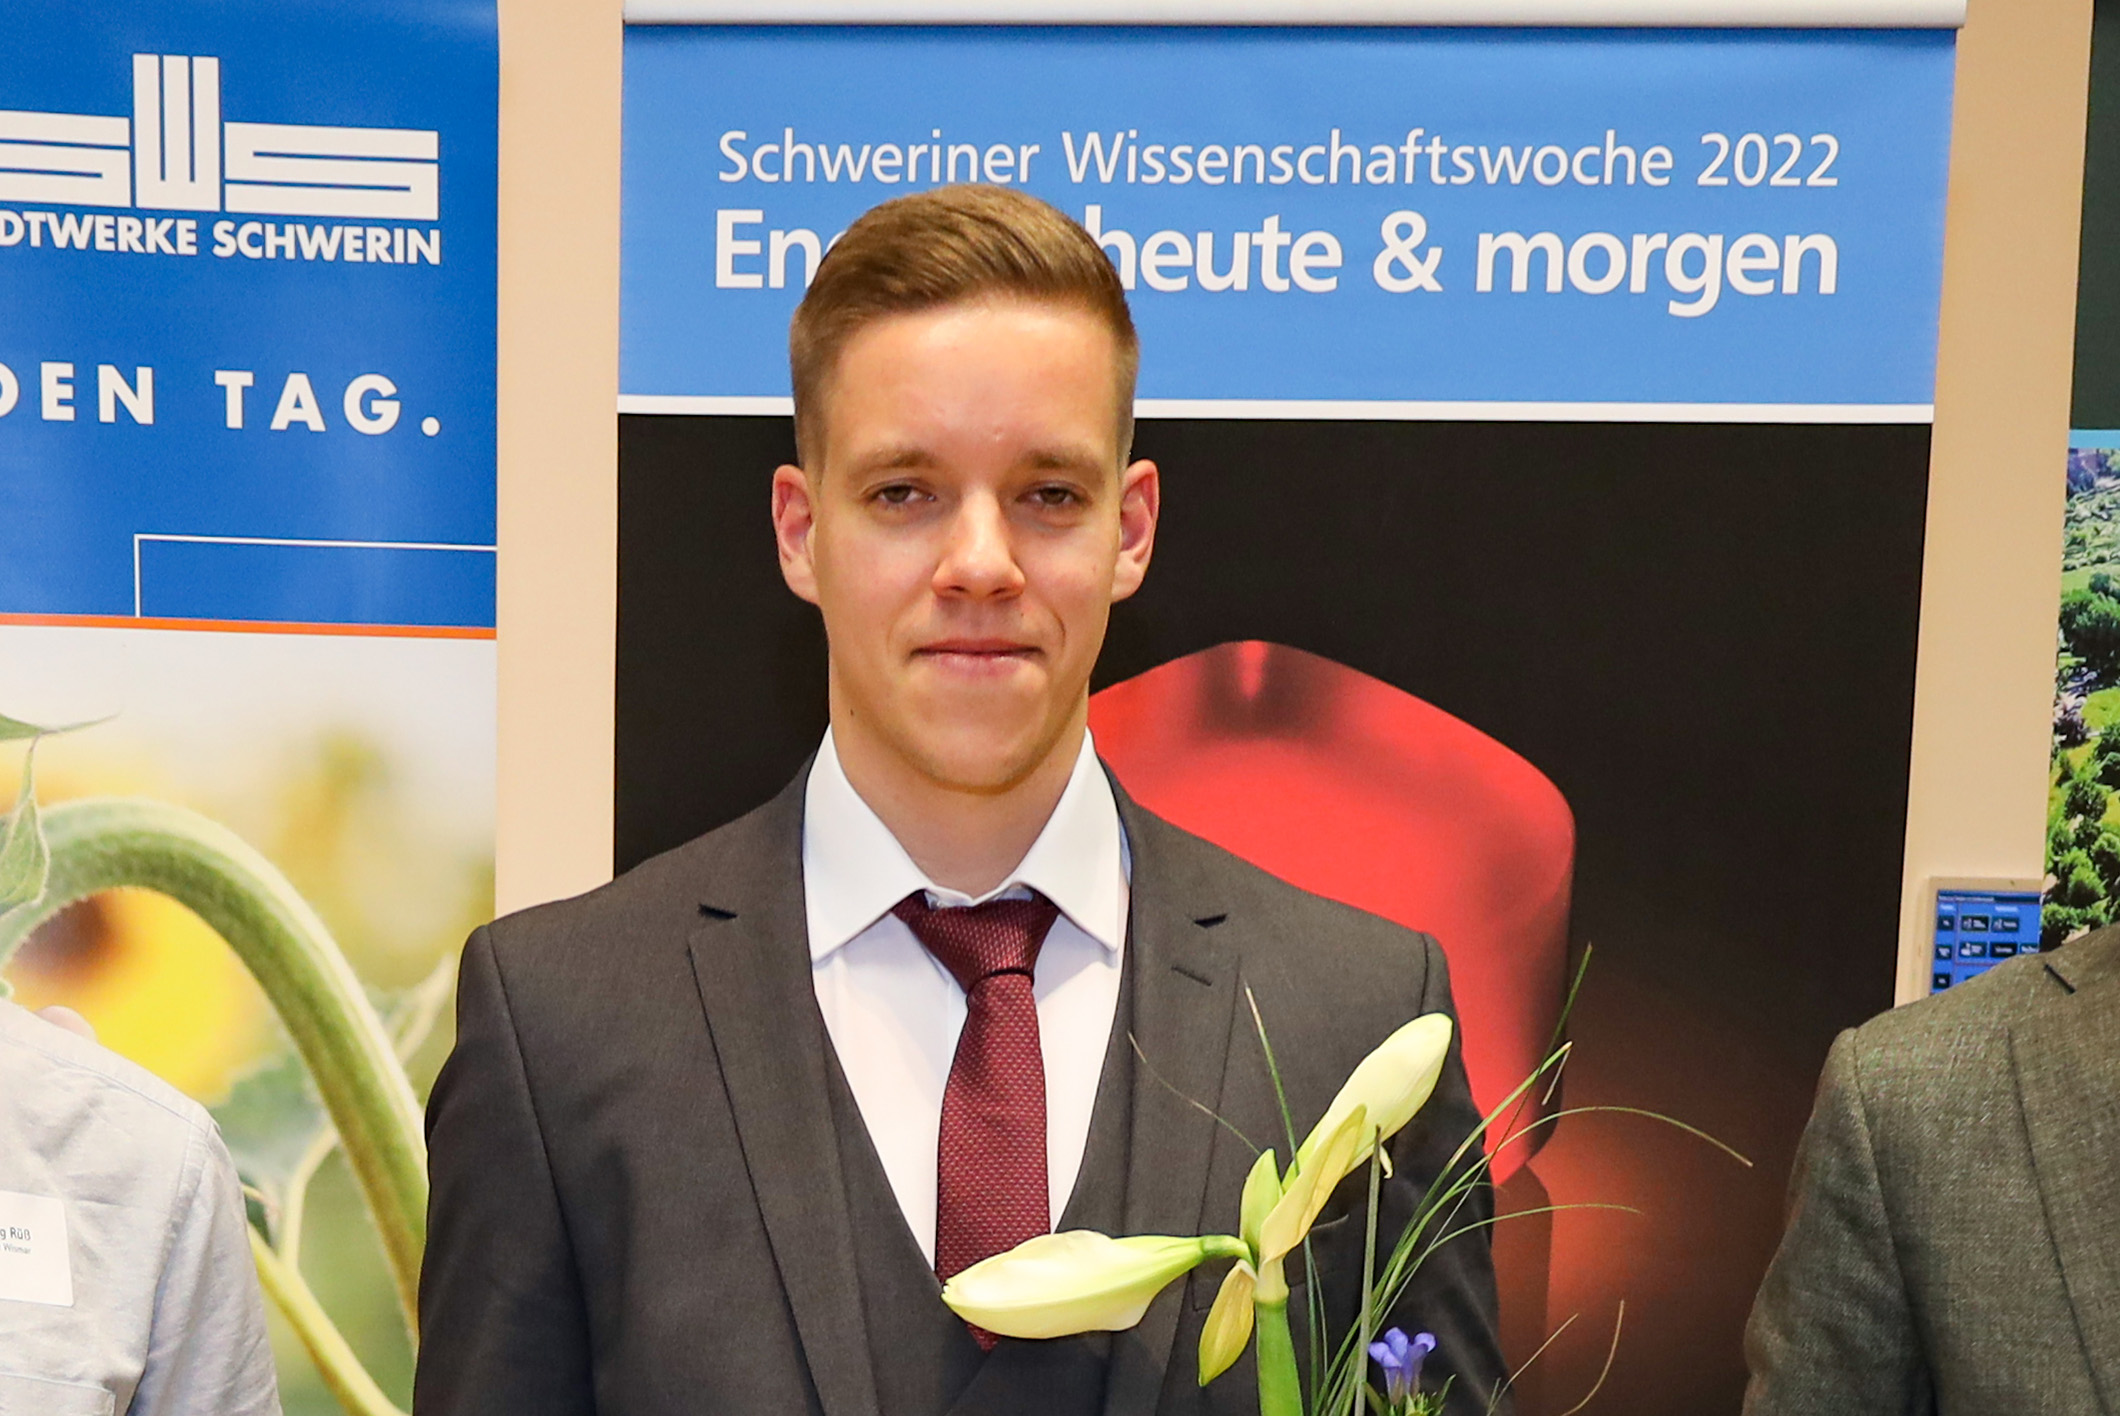 Tobias Fuchsluger von der Hochschule Wismar mit der Urkunde zum Innovationspreis